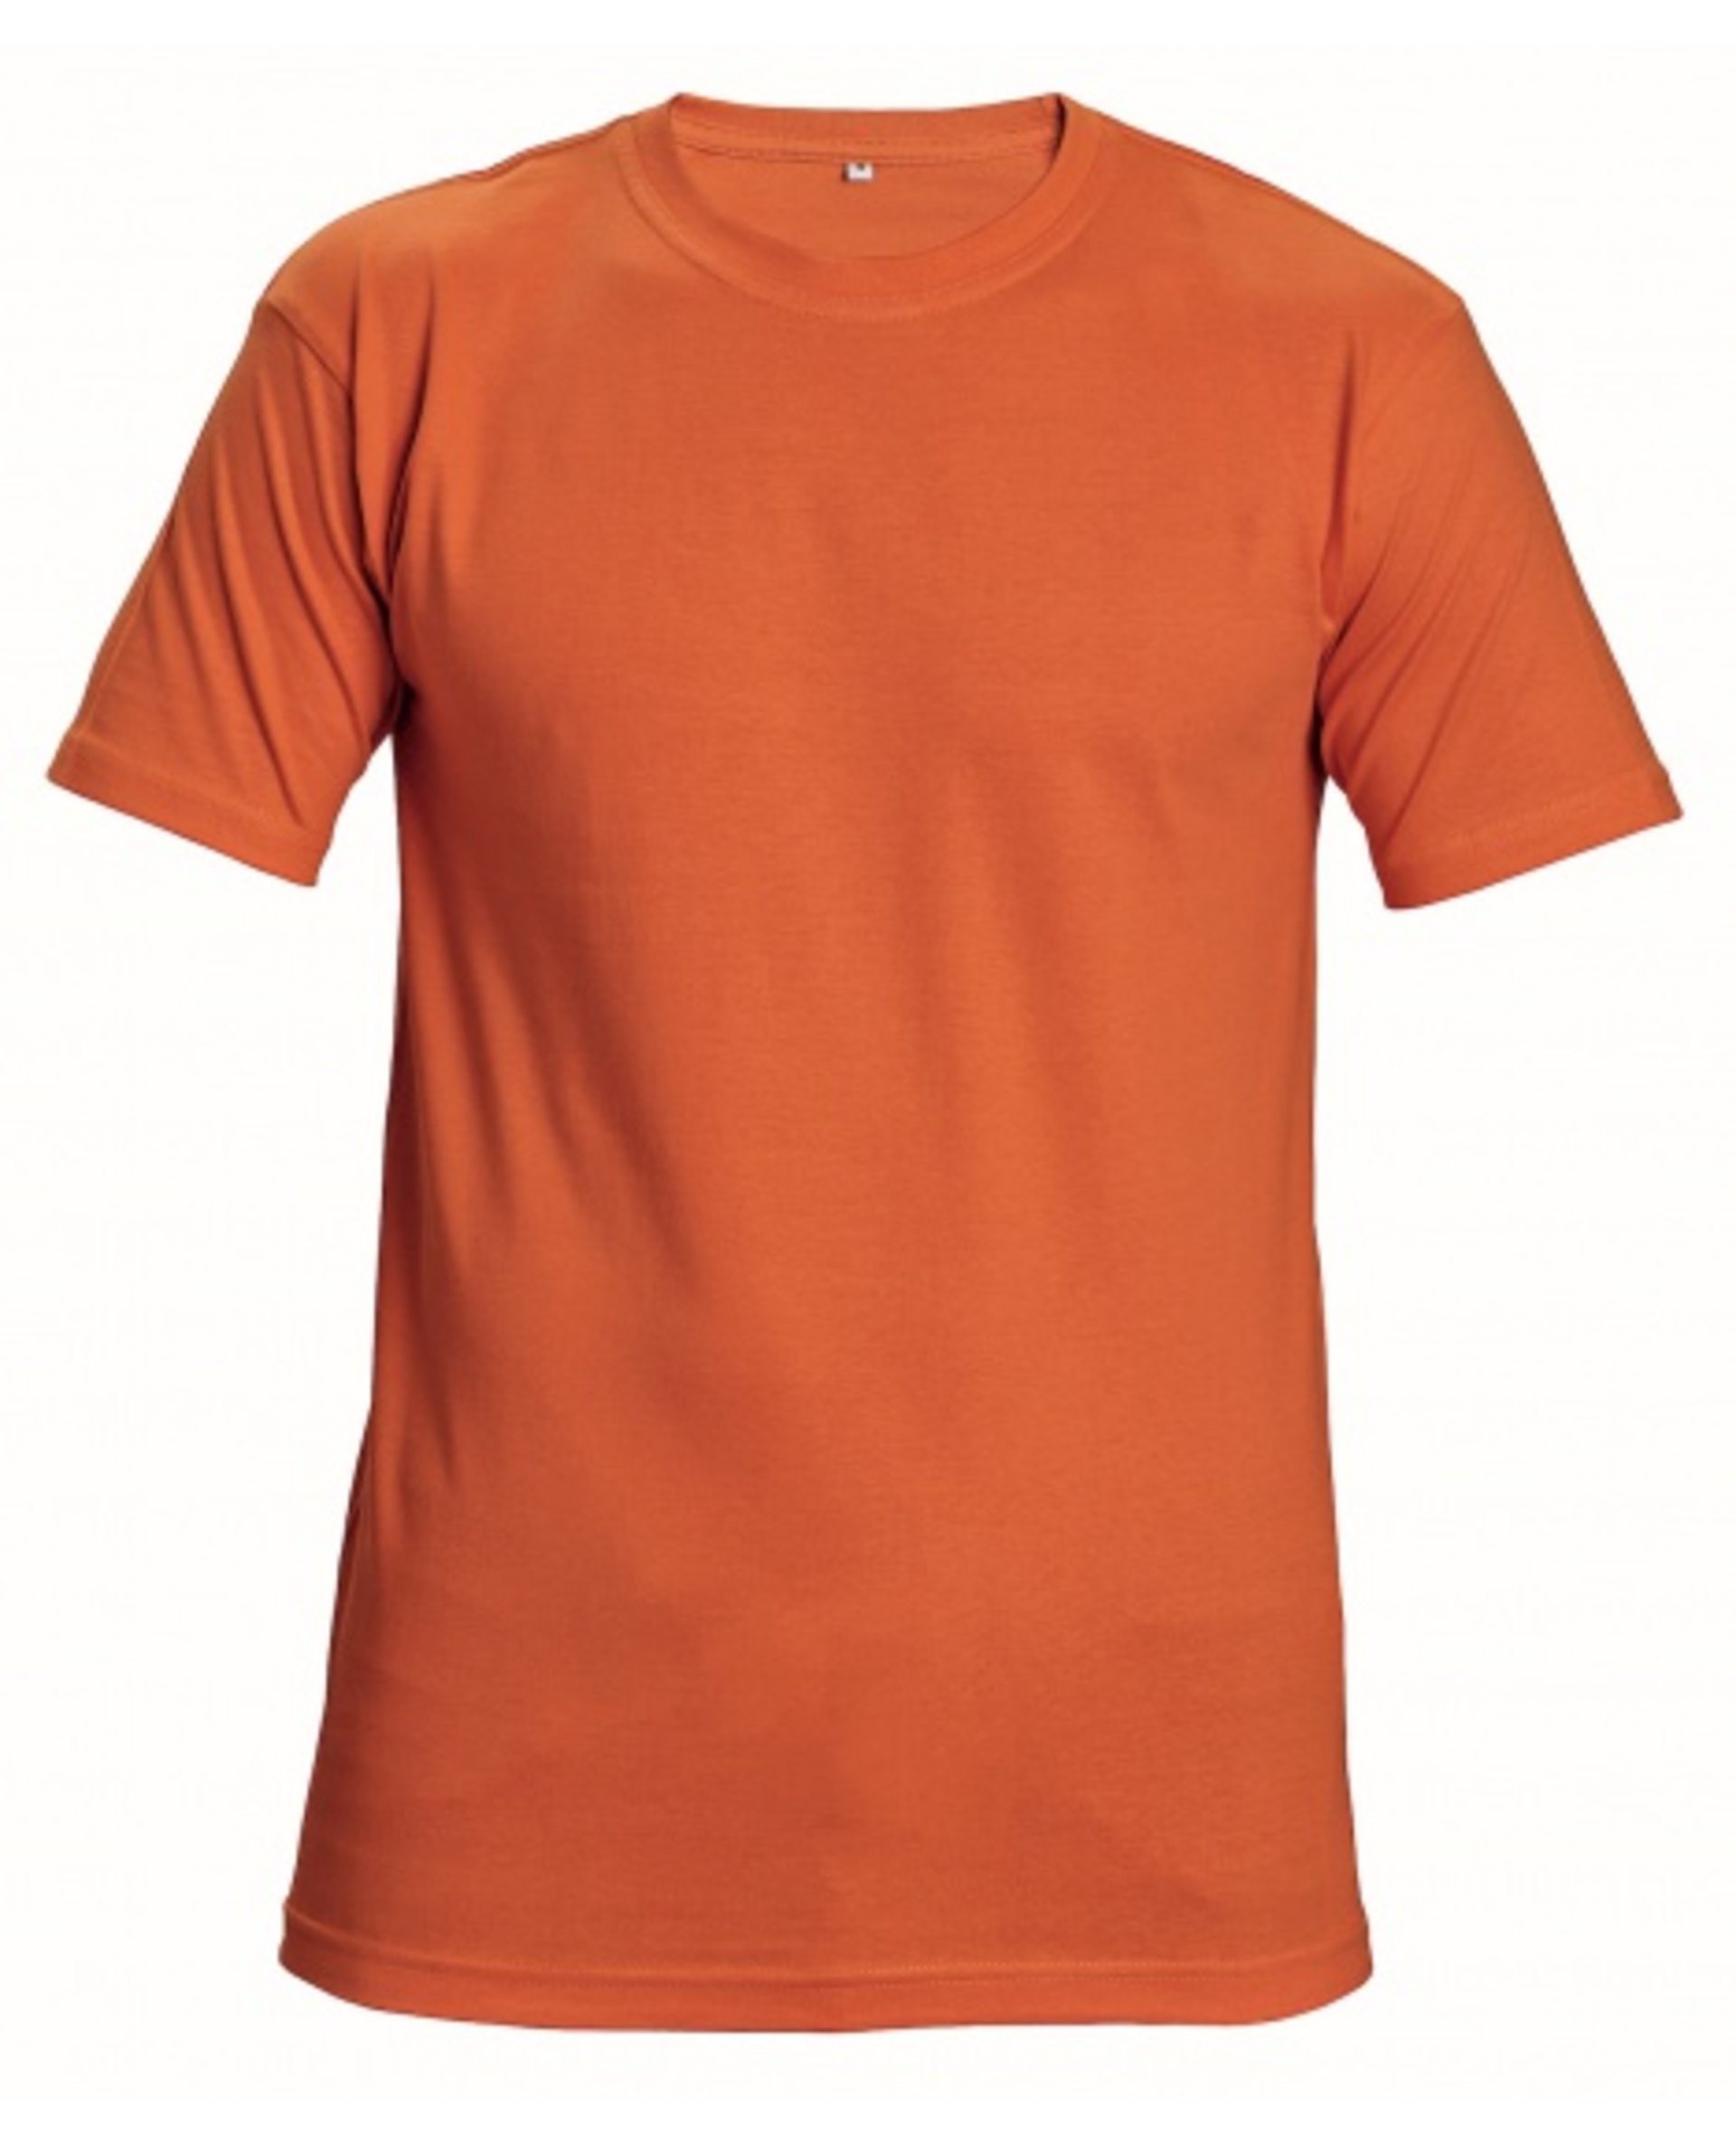 Červa GARAI 190GSM tričko s krátkým rukávem oranžové